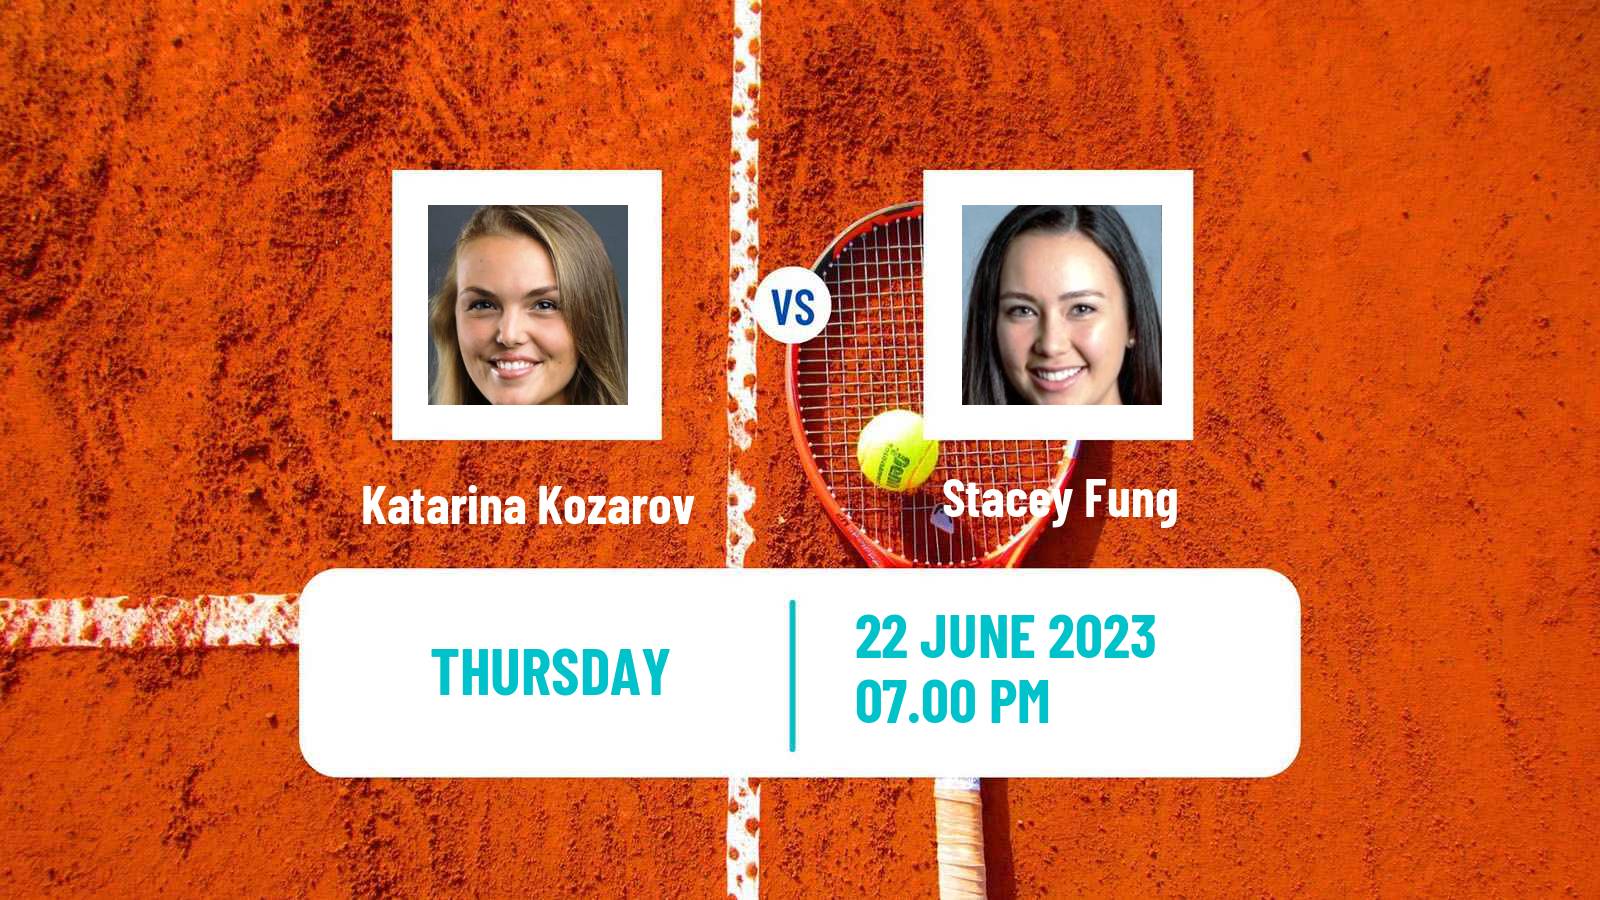 Tennis ITF W25 Wichita Ks Women Katarina Kozarov - Stacey Fung